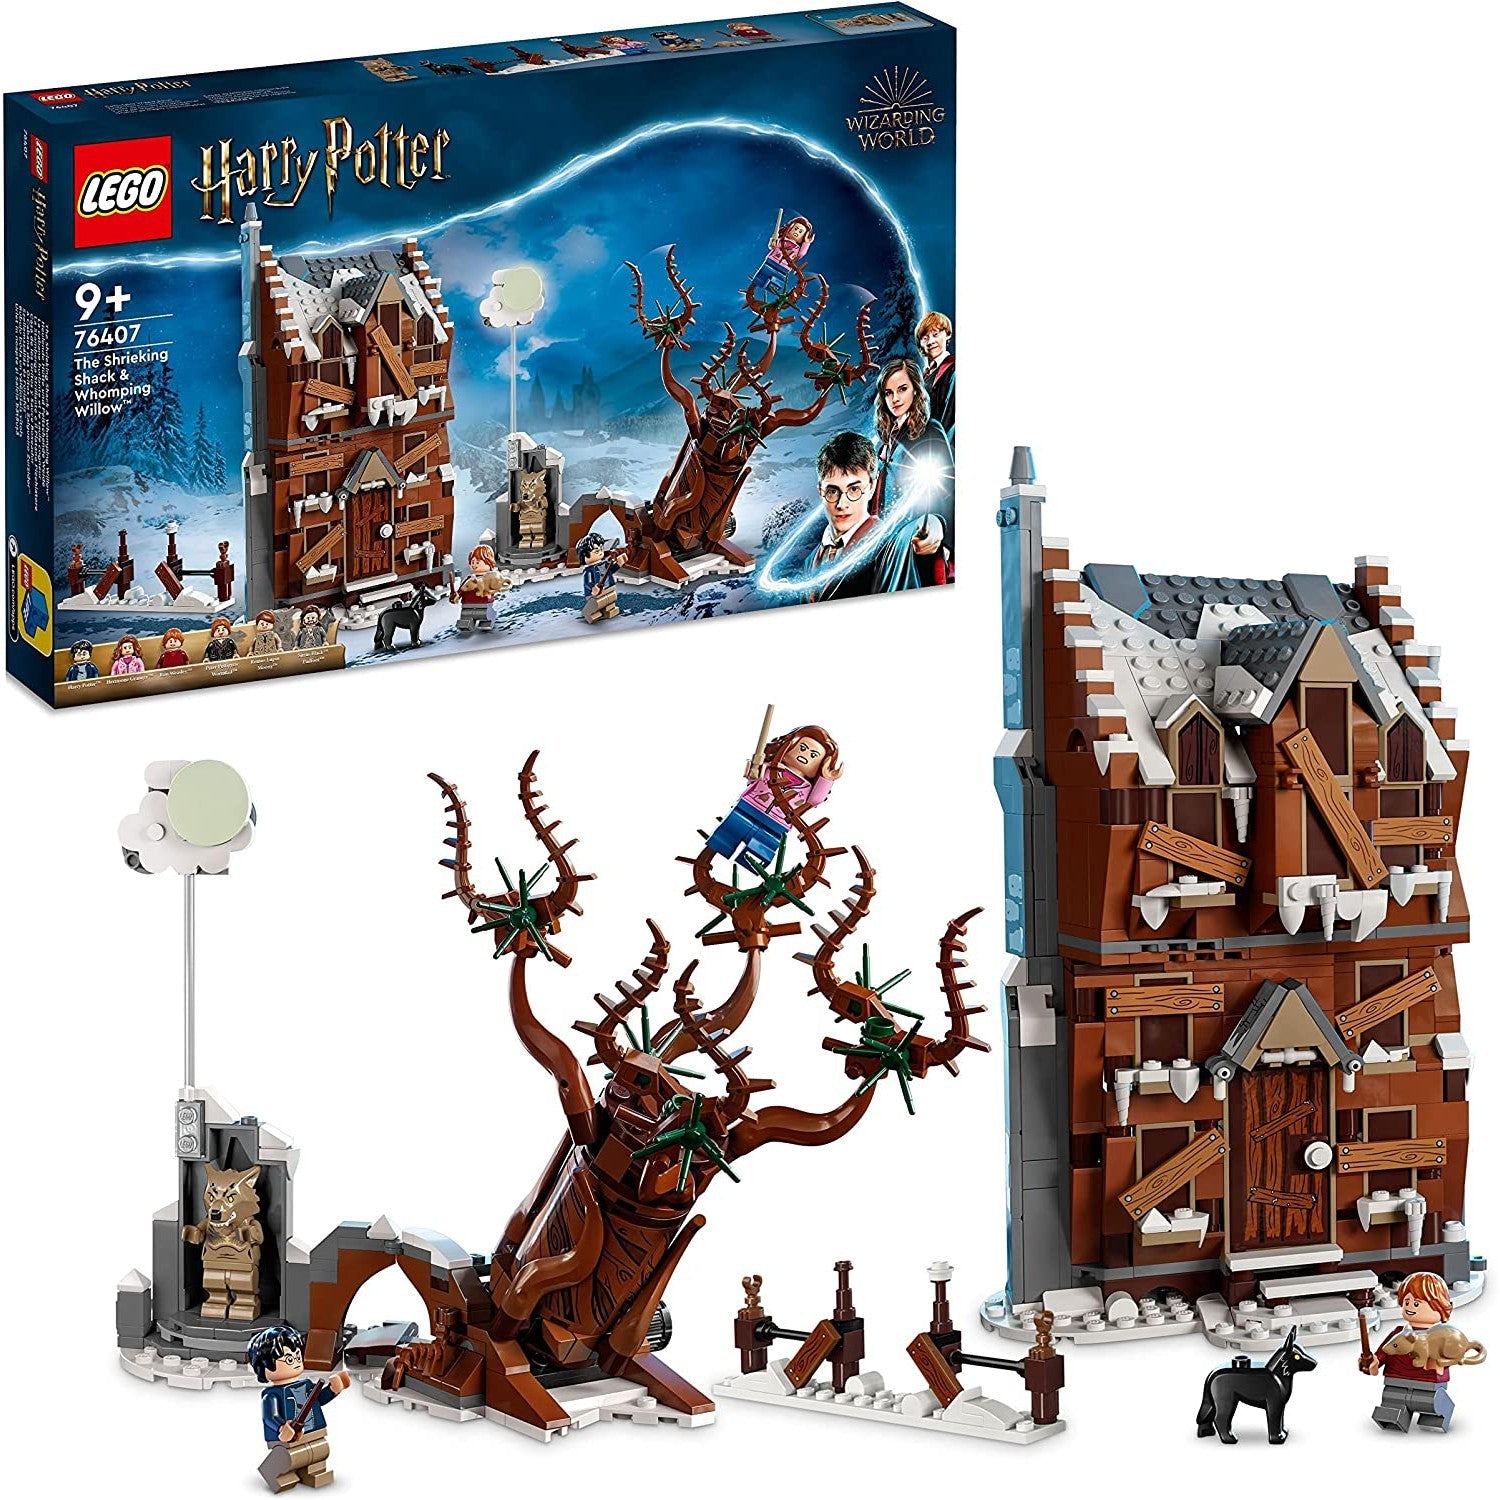 Lego 76407 Harry Potter Shrieking Shack & Whomping Willow - New